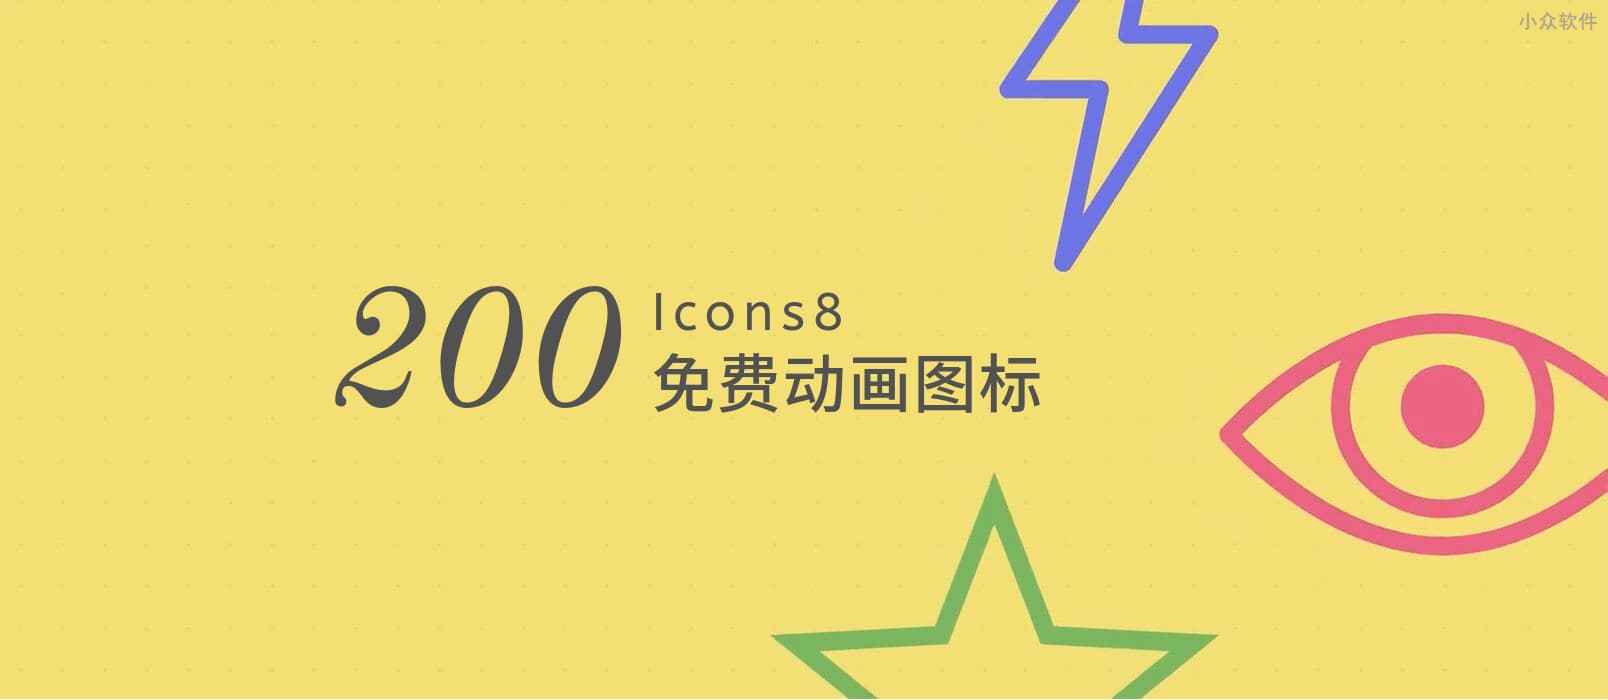 著名的免费图标网站 Icons8 发布了 200+ 动画图标